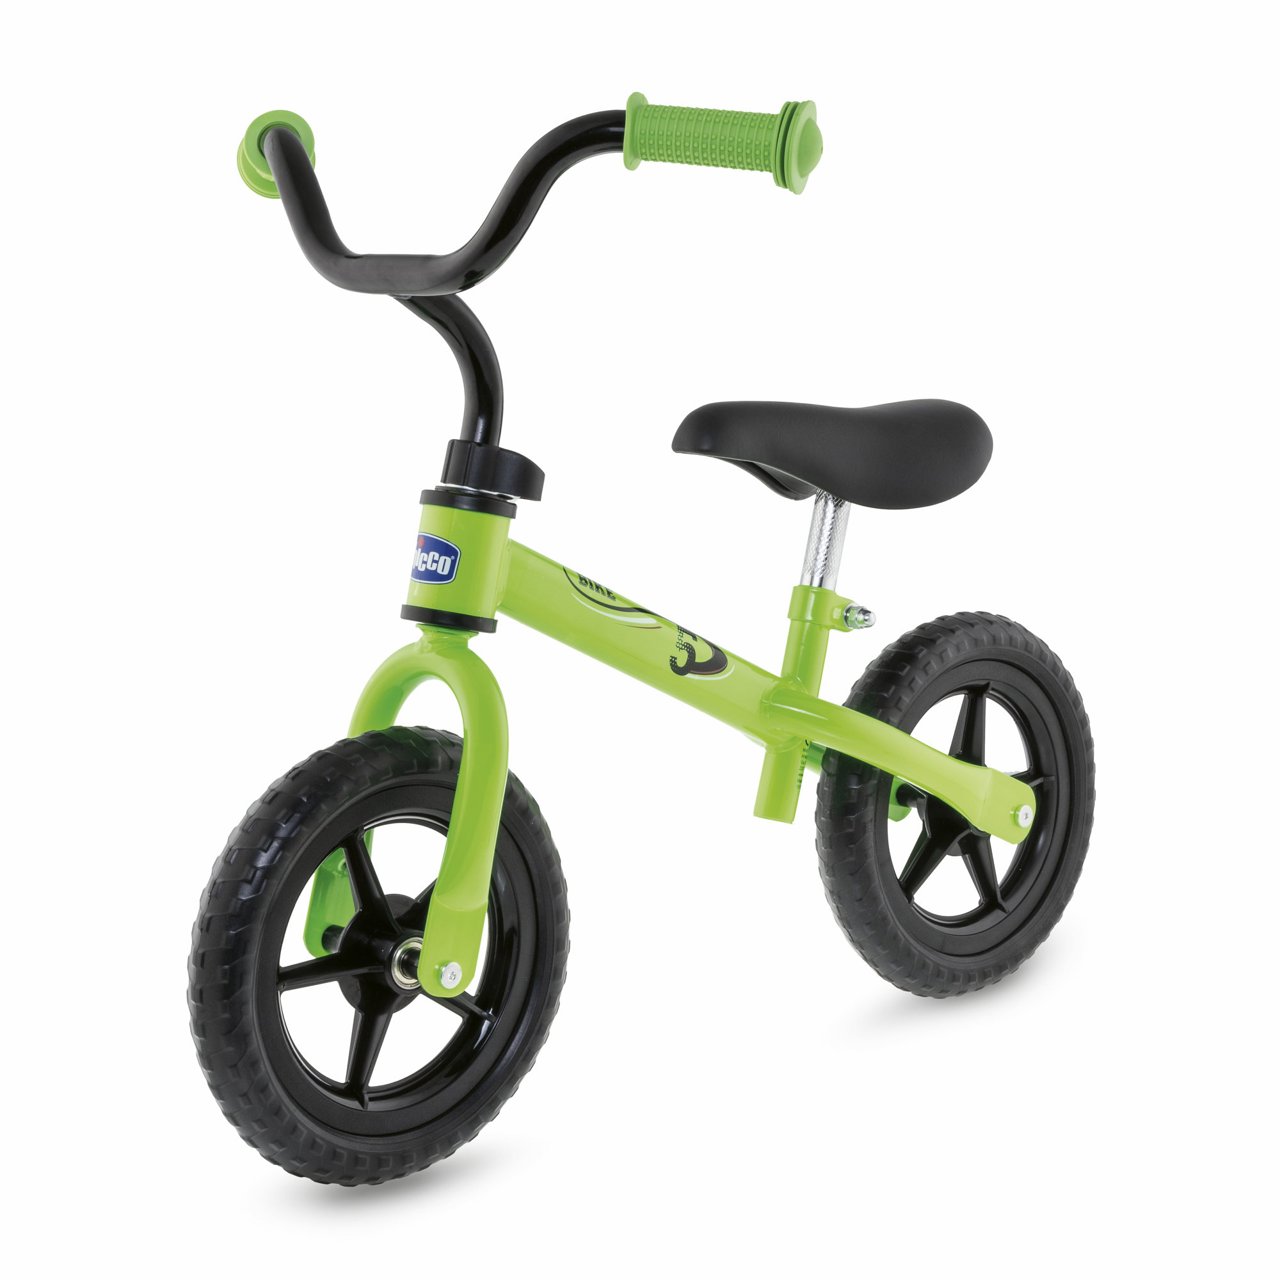 Bicicleta sin pedales de aprendizaje para niños desde 18 meses.